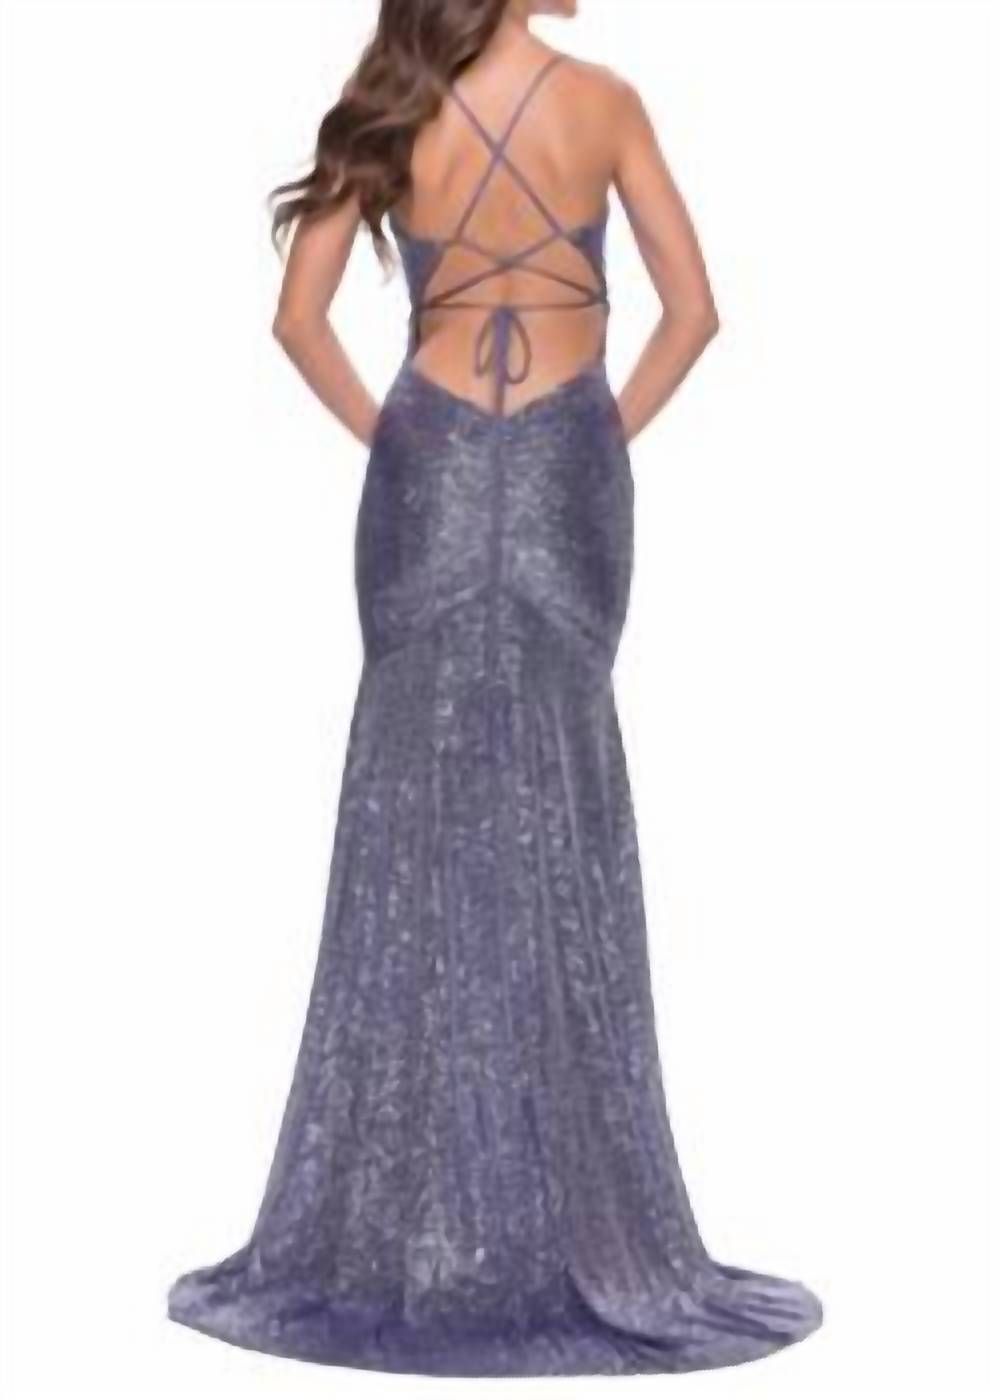 Style 1-2917248268-1901 La Femme Size 6 Prom Purple Side Slit Dress on Queenly